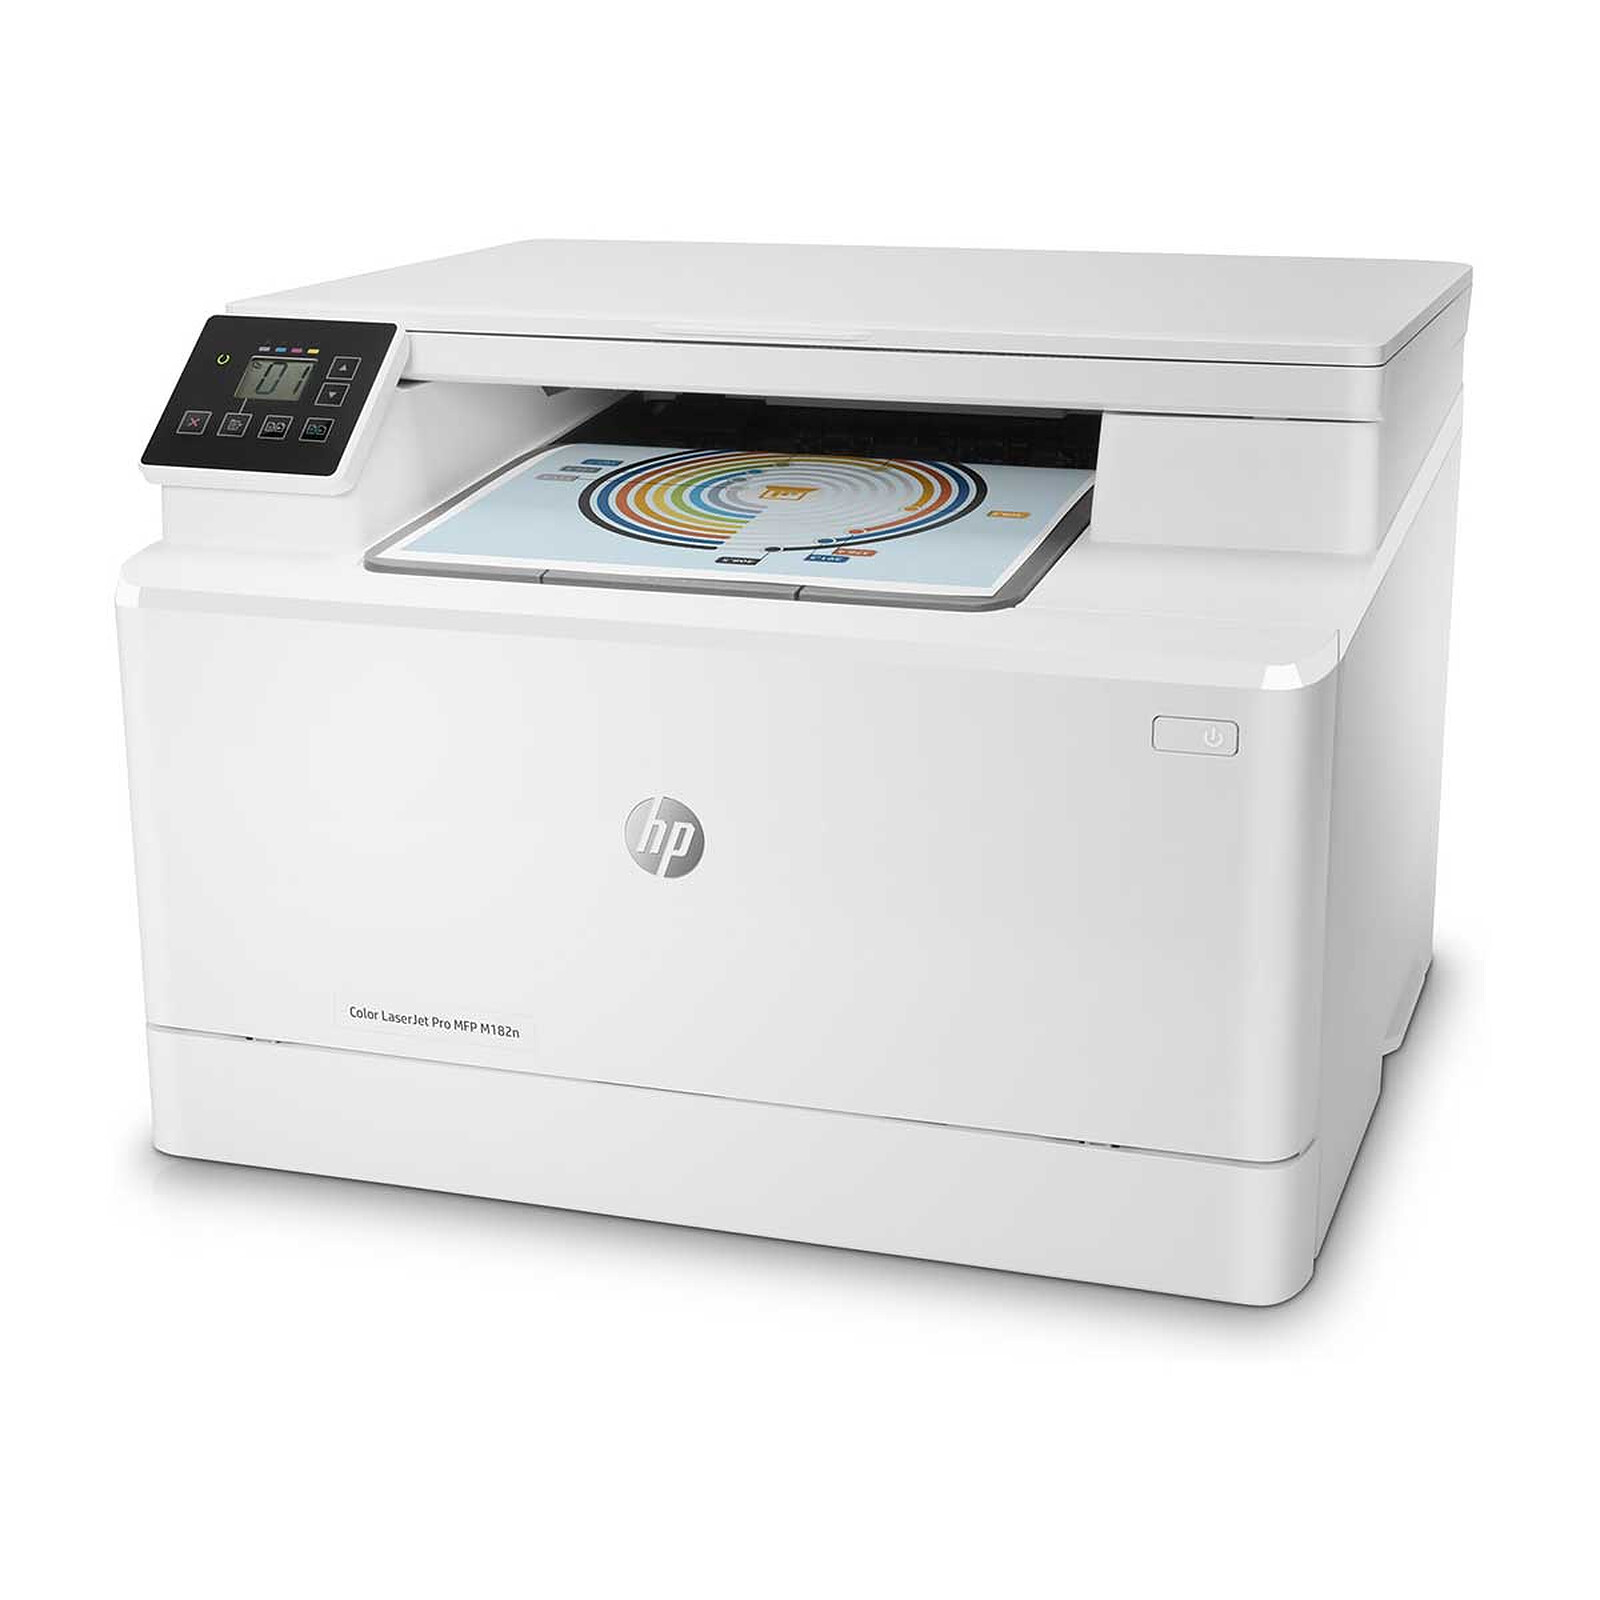 HP LaserJet Pro M182n - All-in-one printer - LDLC 3-year warranty